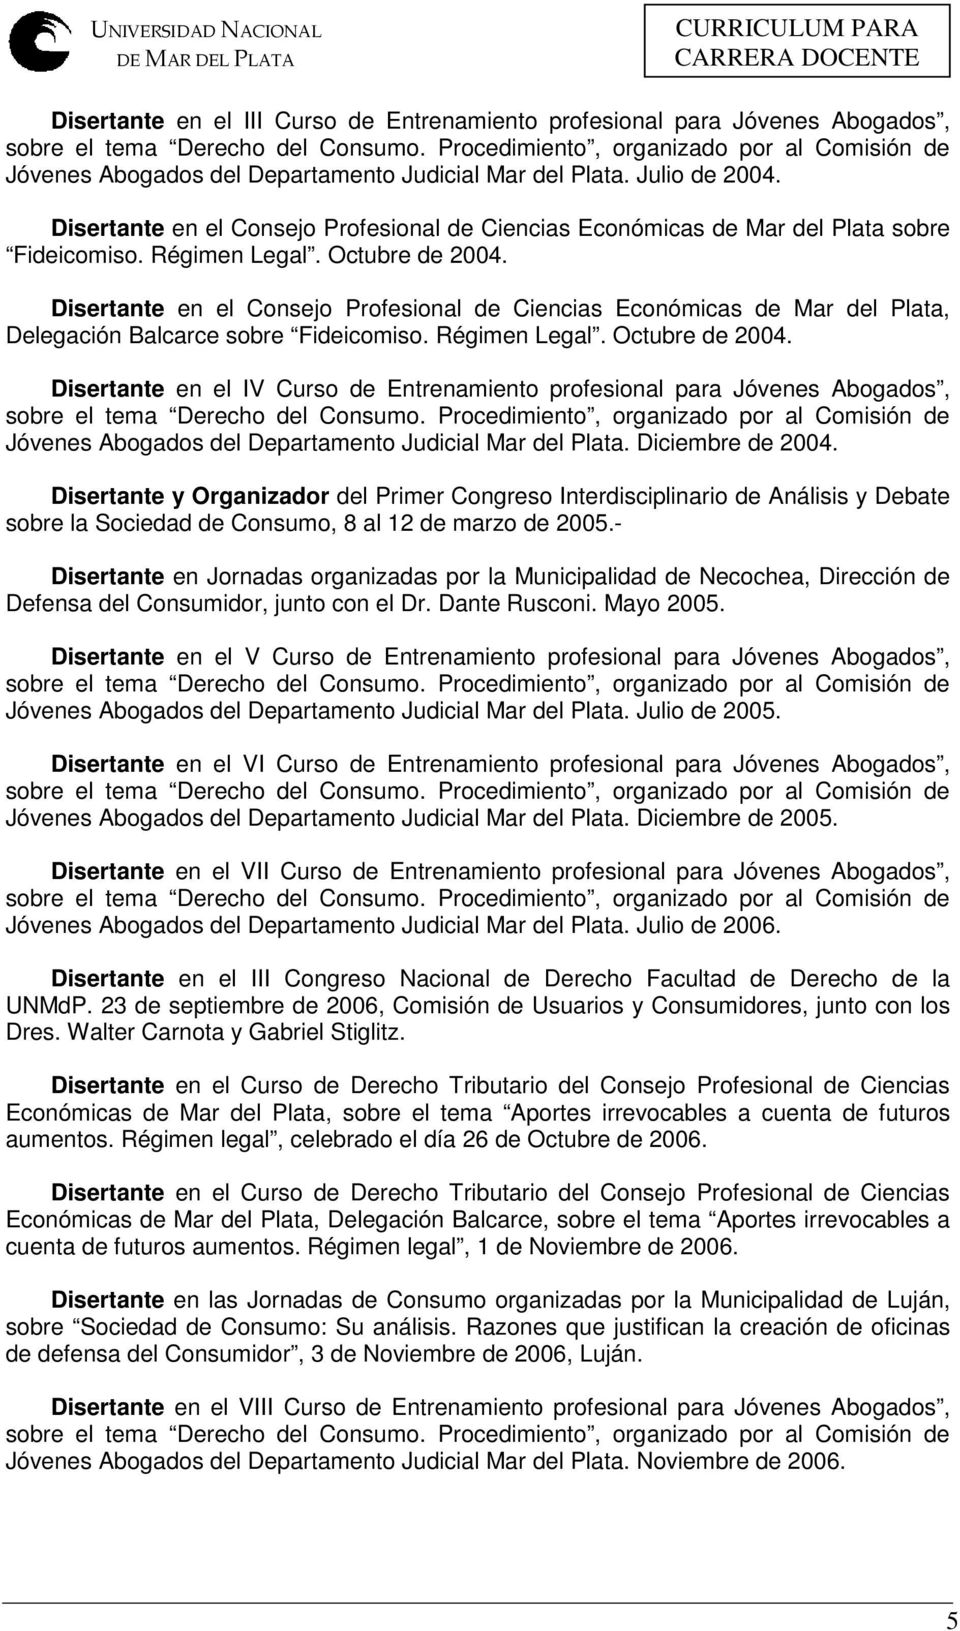 Disertante en el Consejo Profesional de Ciencias Económicas de Mar del Plata, Delegación Balcarce sobre Fideicomiso. Régimen Legal. Octubre de 2004.